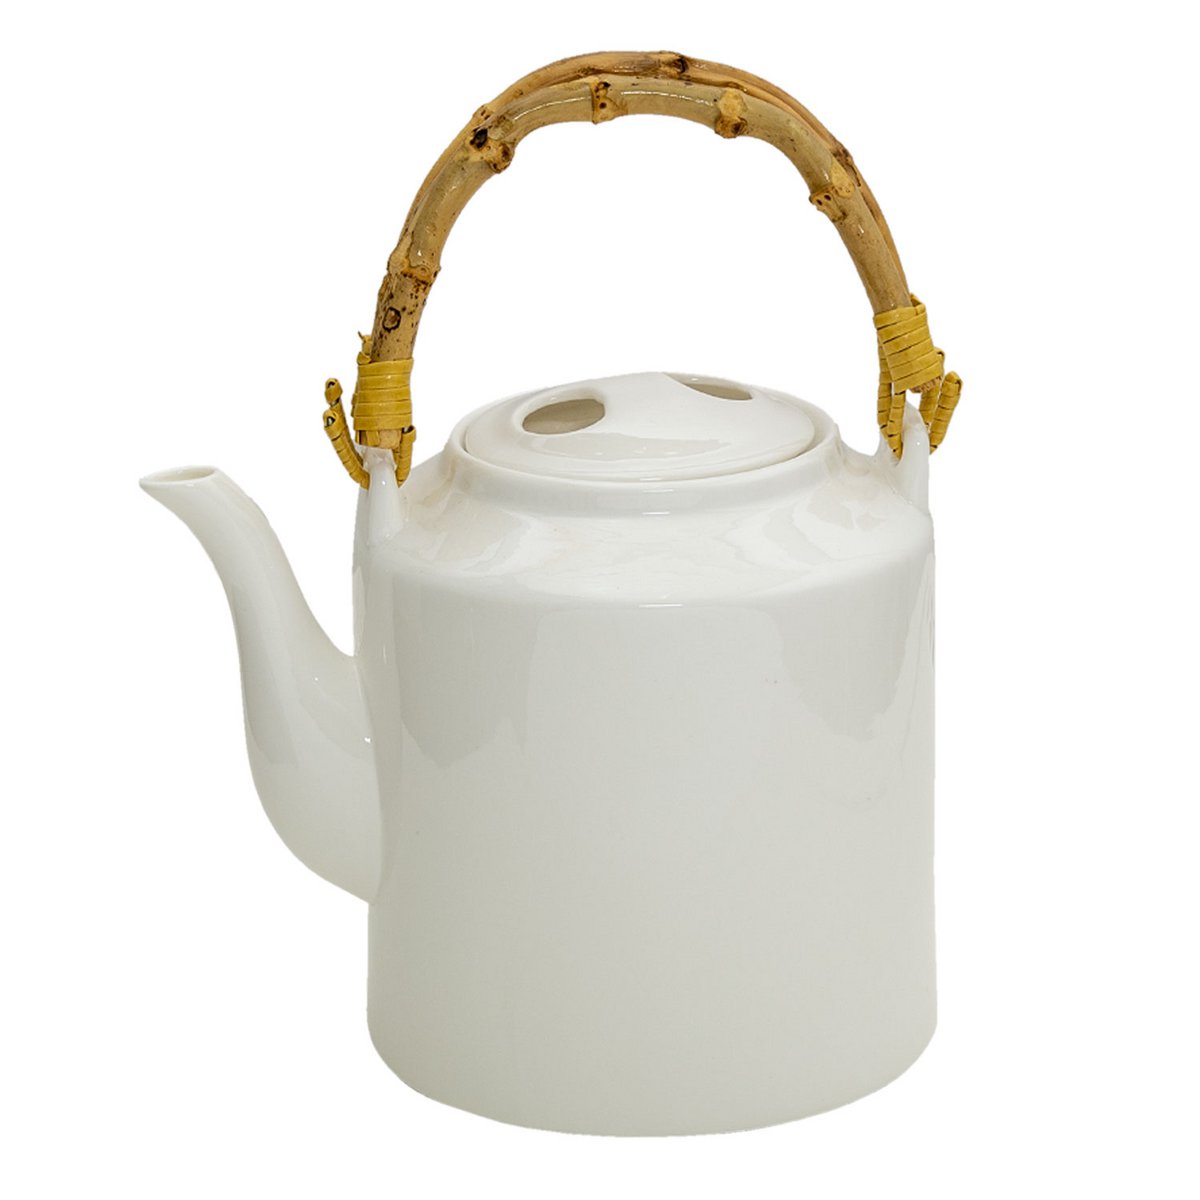 Large Ceramic Teapot 1.5L